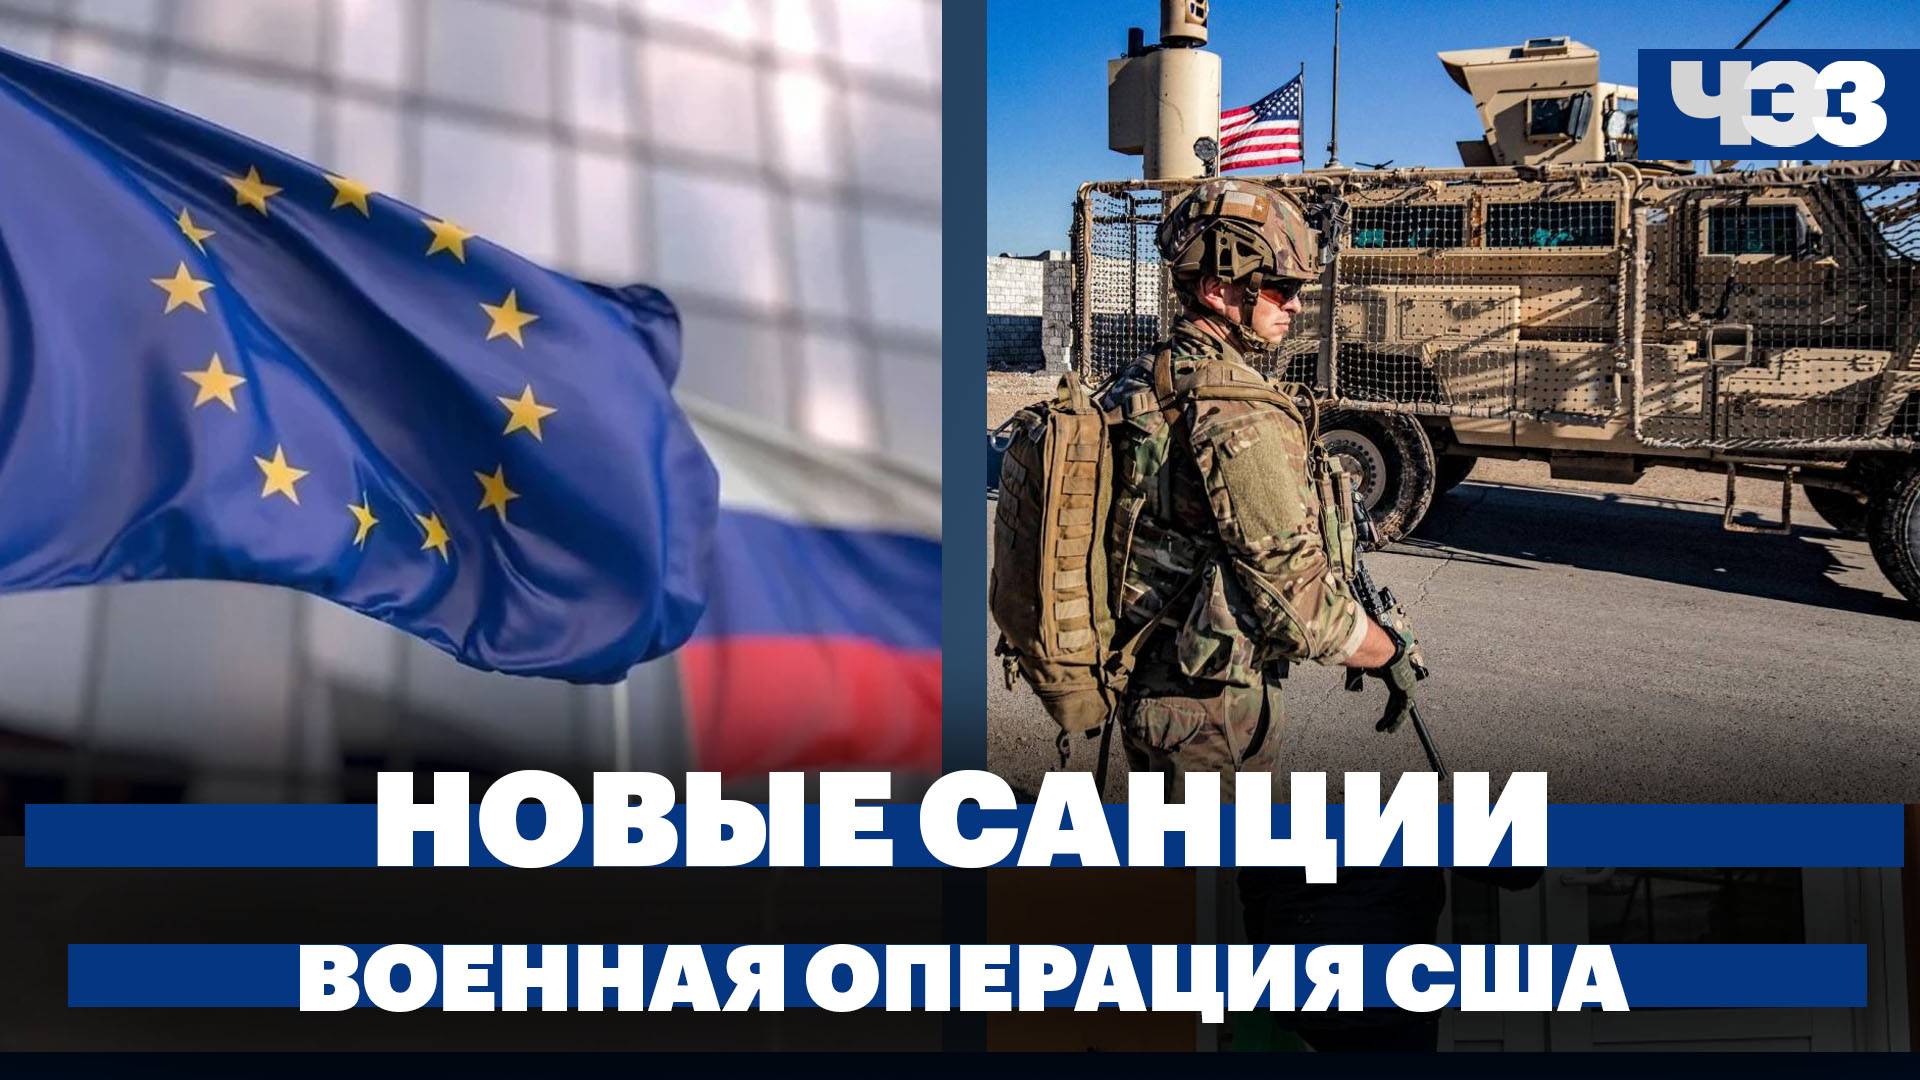 ЕС ввел во внешнюю торговлю правило No Russia, военная операция США в Красном море